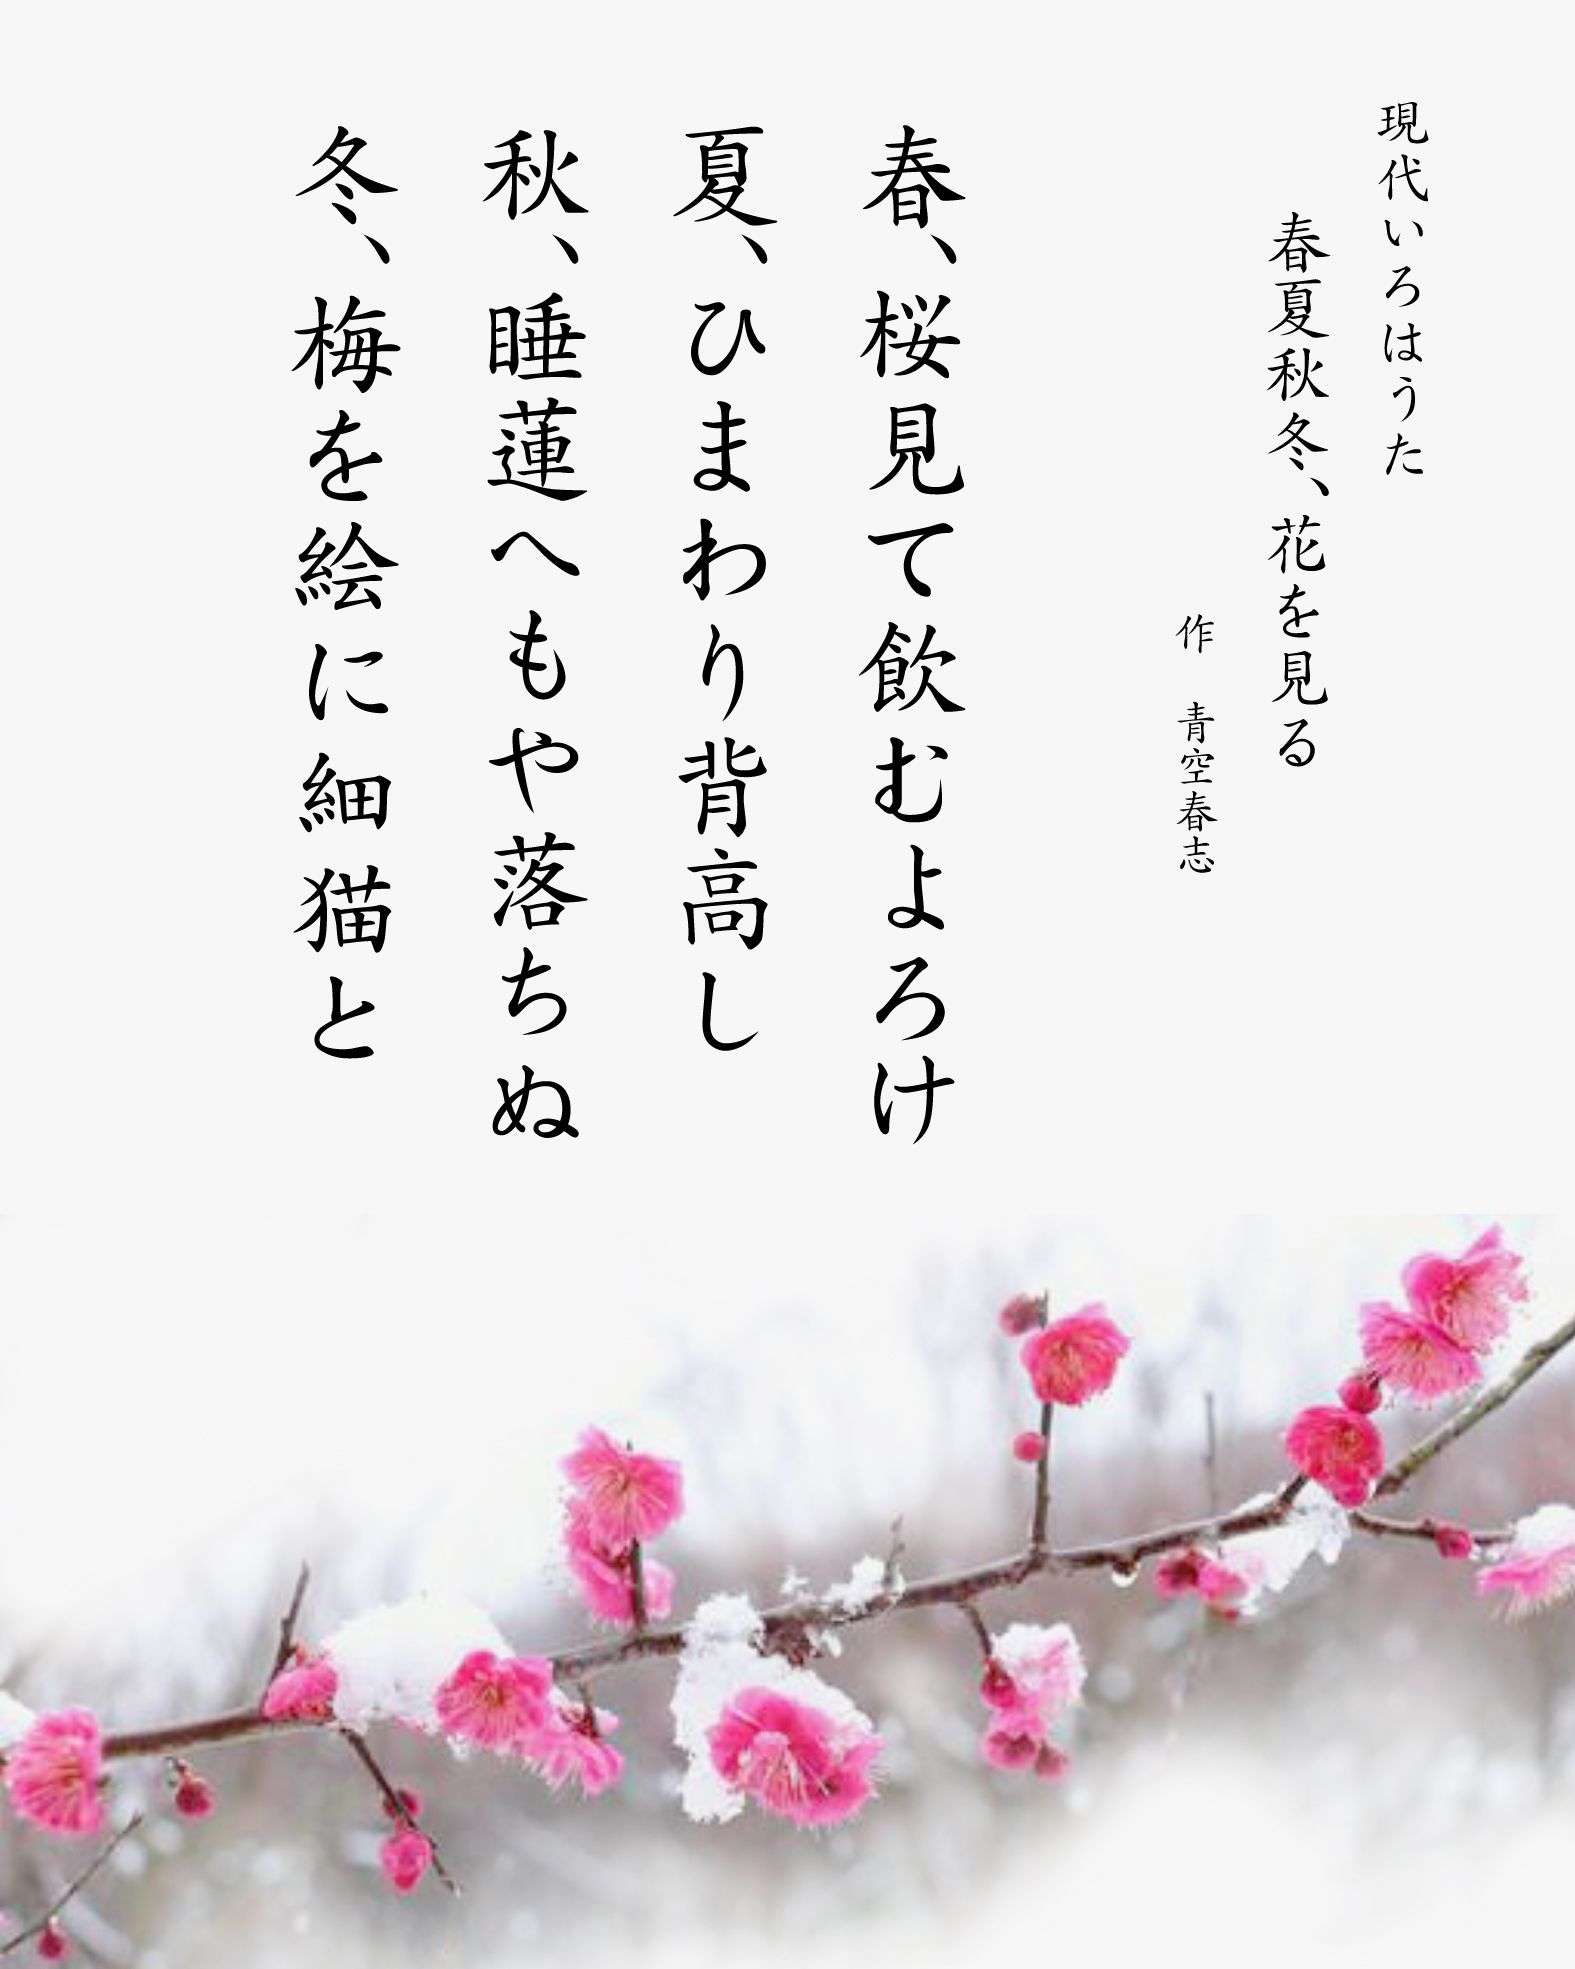 パングラム　現代いろはうた　現代いろは歌　春夏秋冬、花を見る　Japanese Pangrams